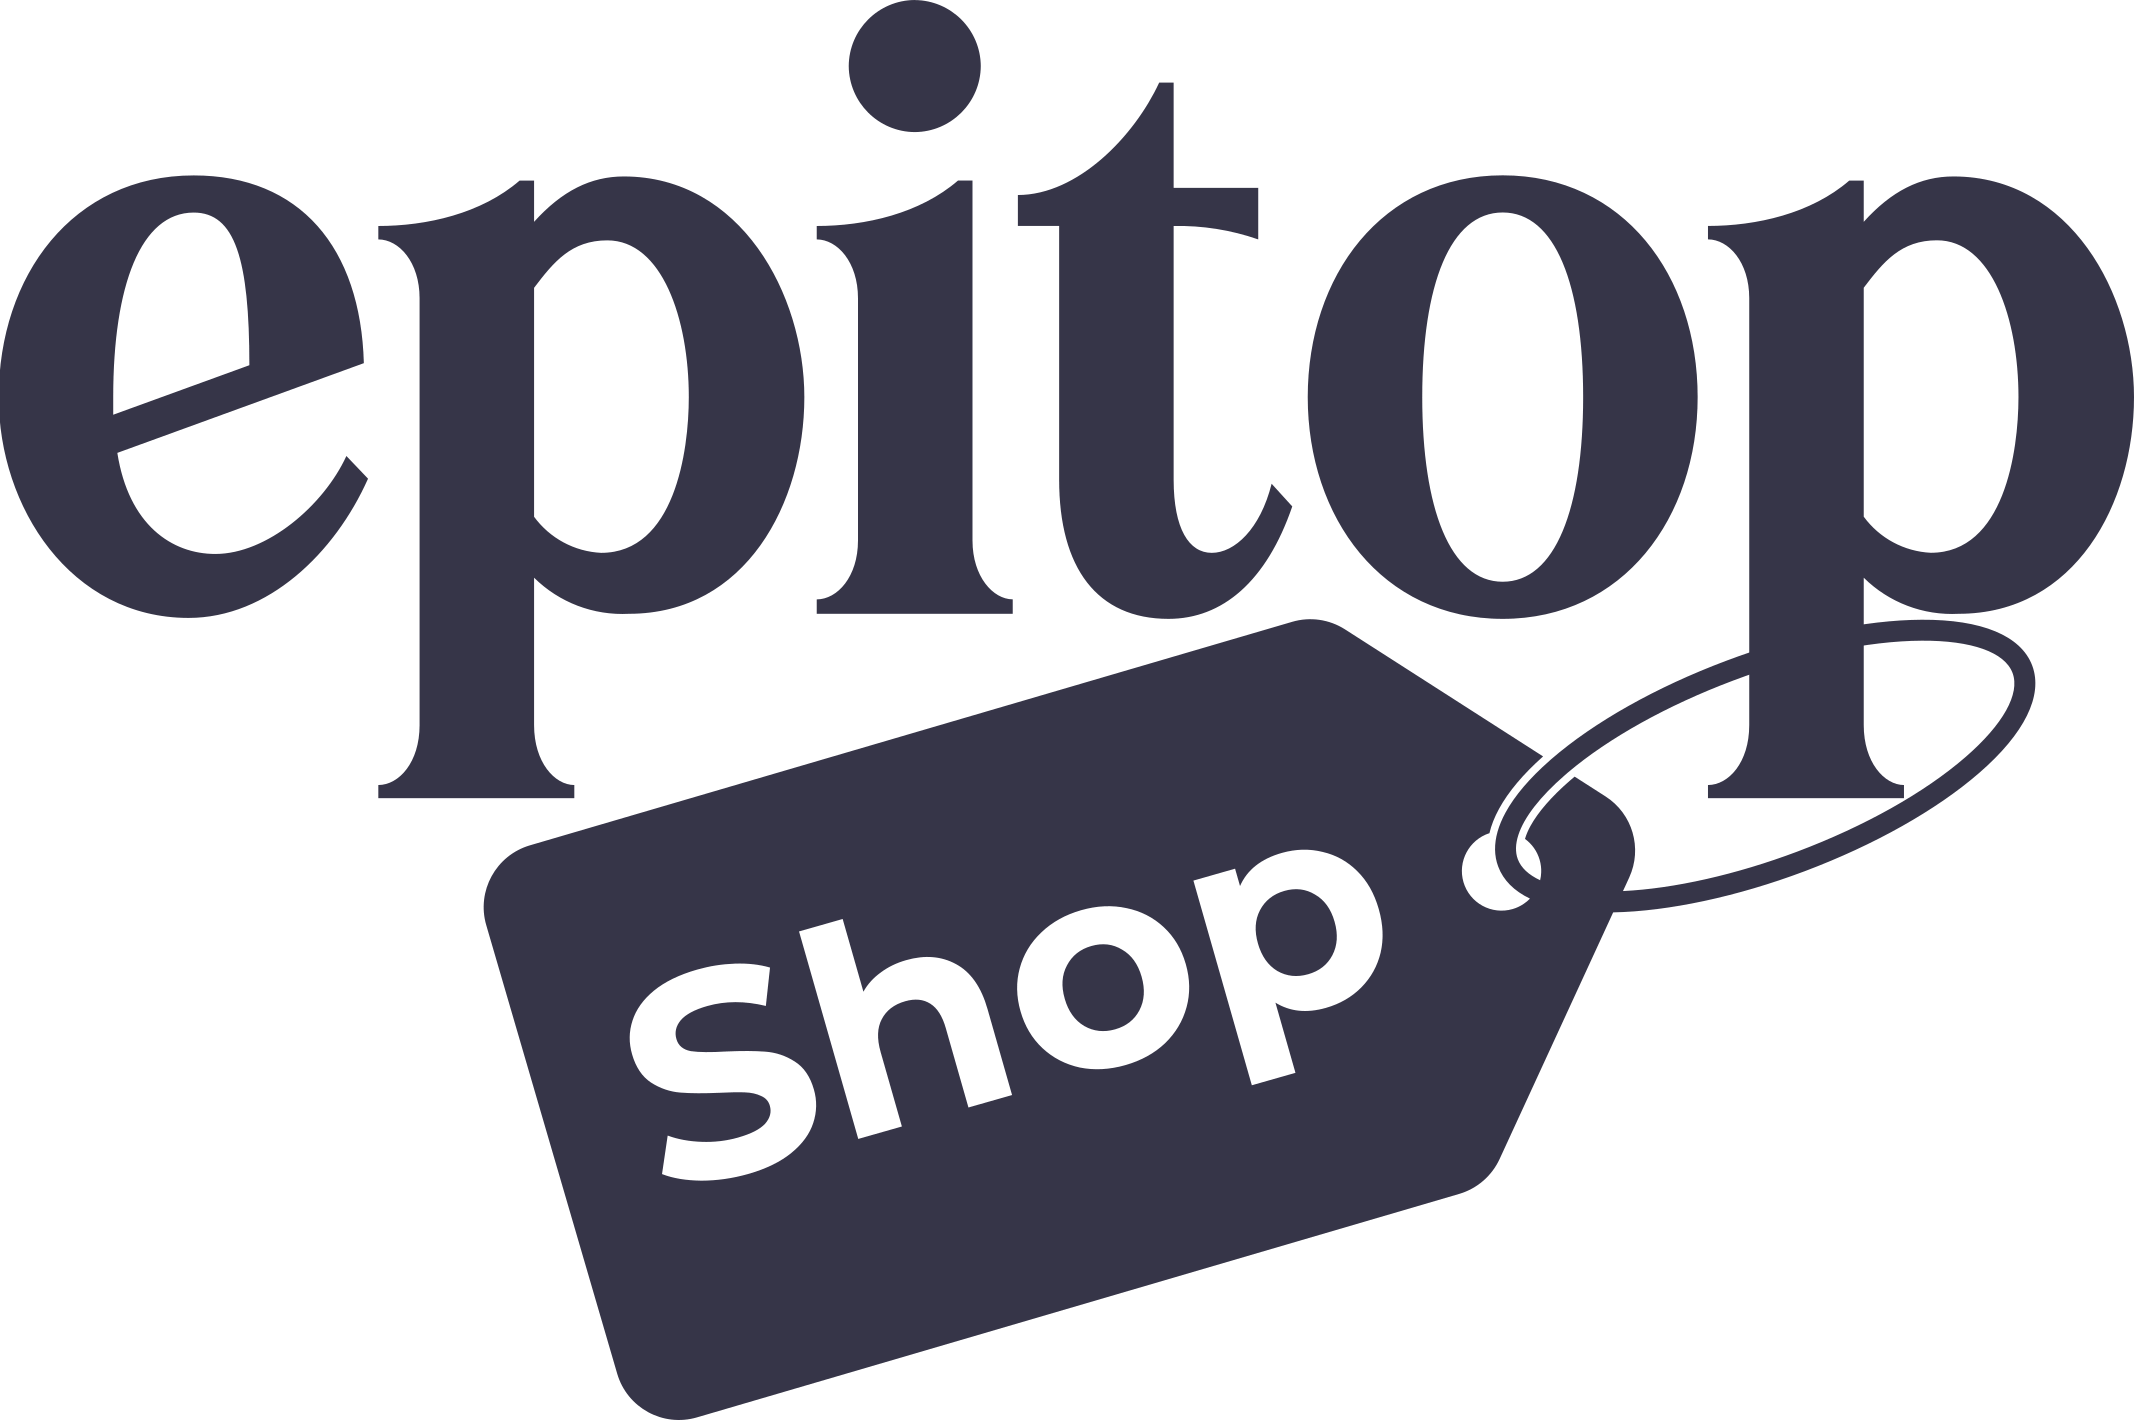 Epitop Shop Etiquette